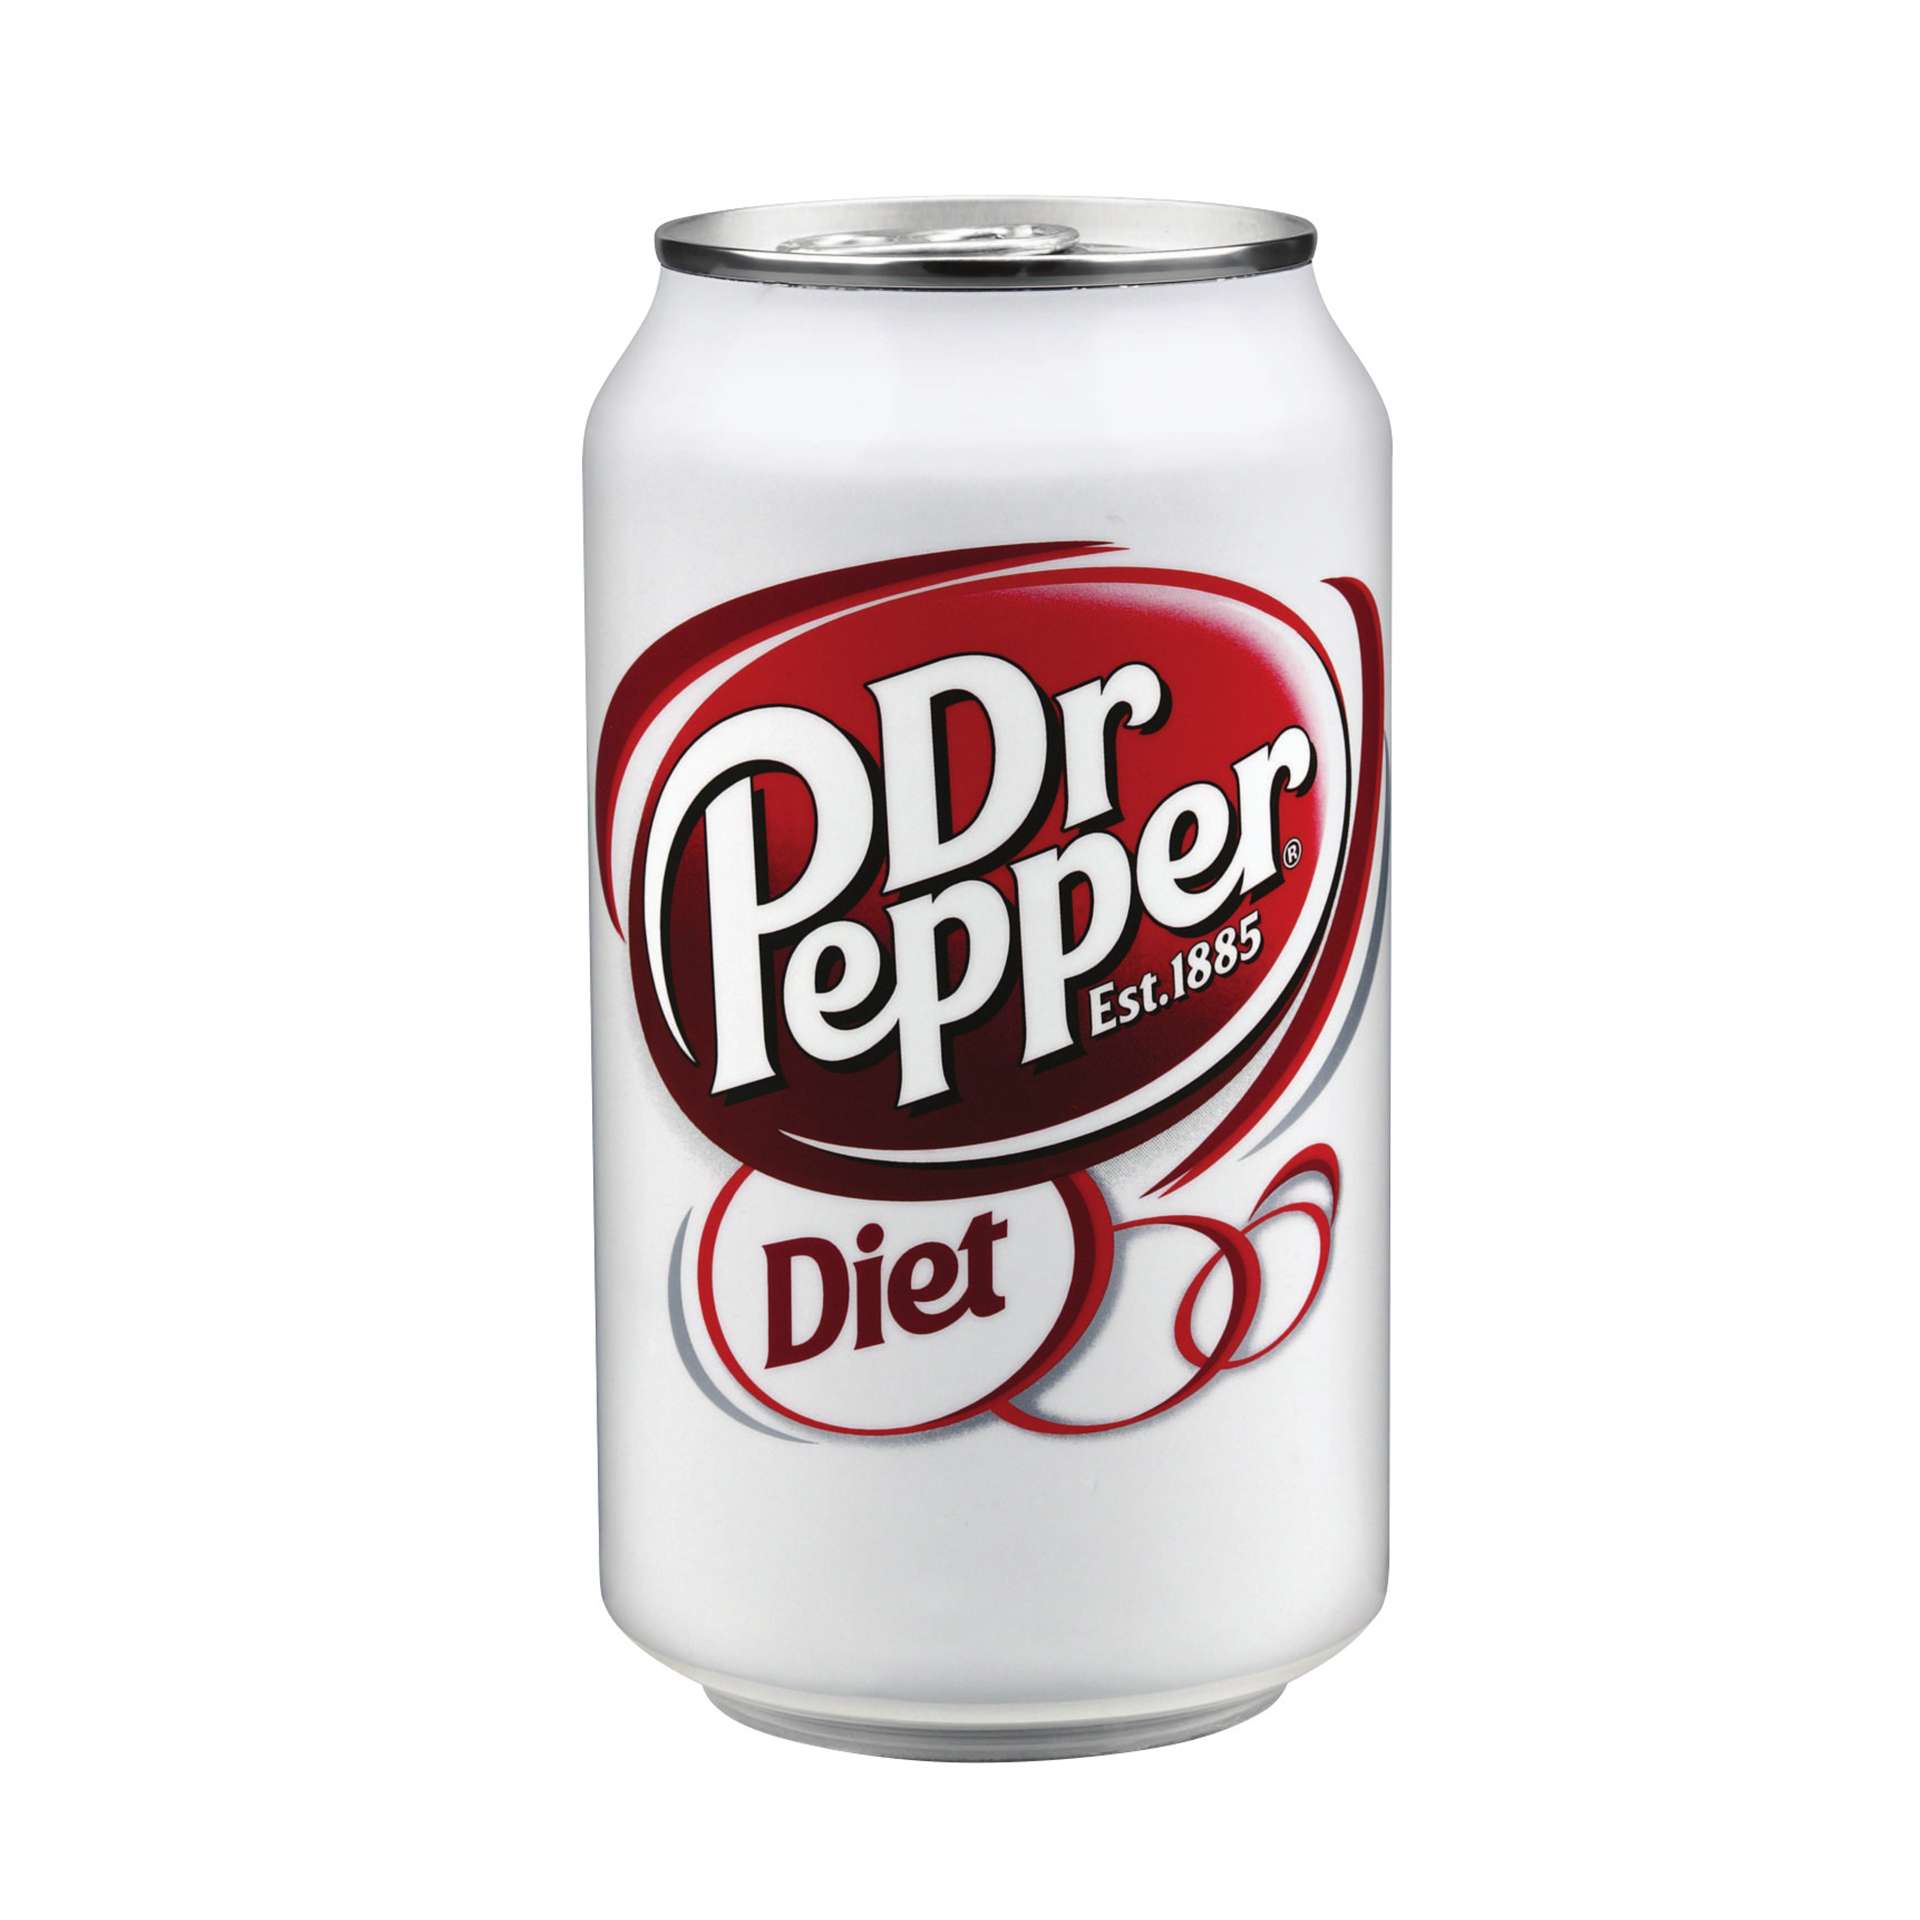 Pepper напиток. Доктор Пеппер Зеро. Доктор Пеппер Diet Zero. Доктор Пеппер 0.33. Доктор Пеппер 500мл.